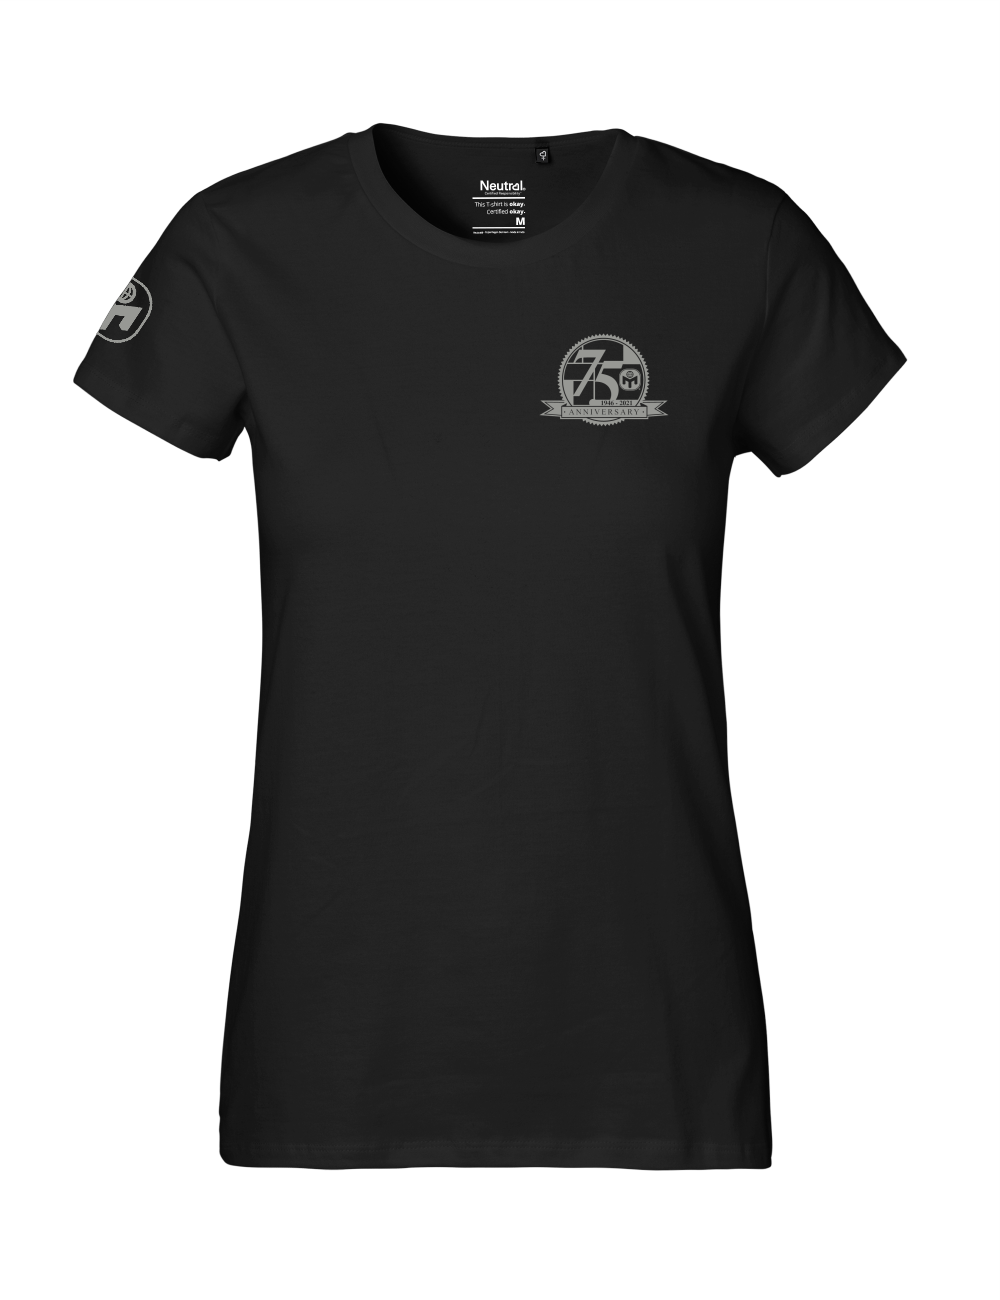 T-Shirt Damen "75. Geburtstag von Mensa" Premium